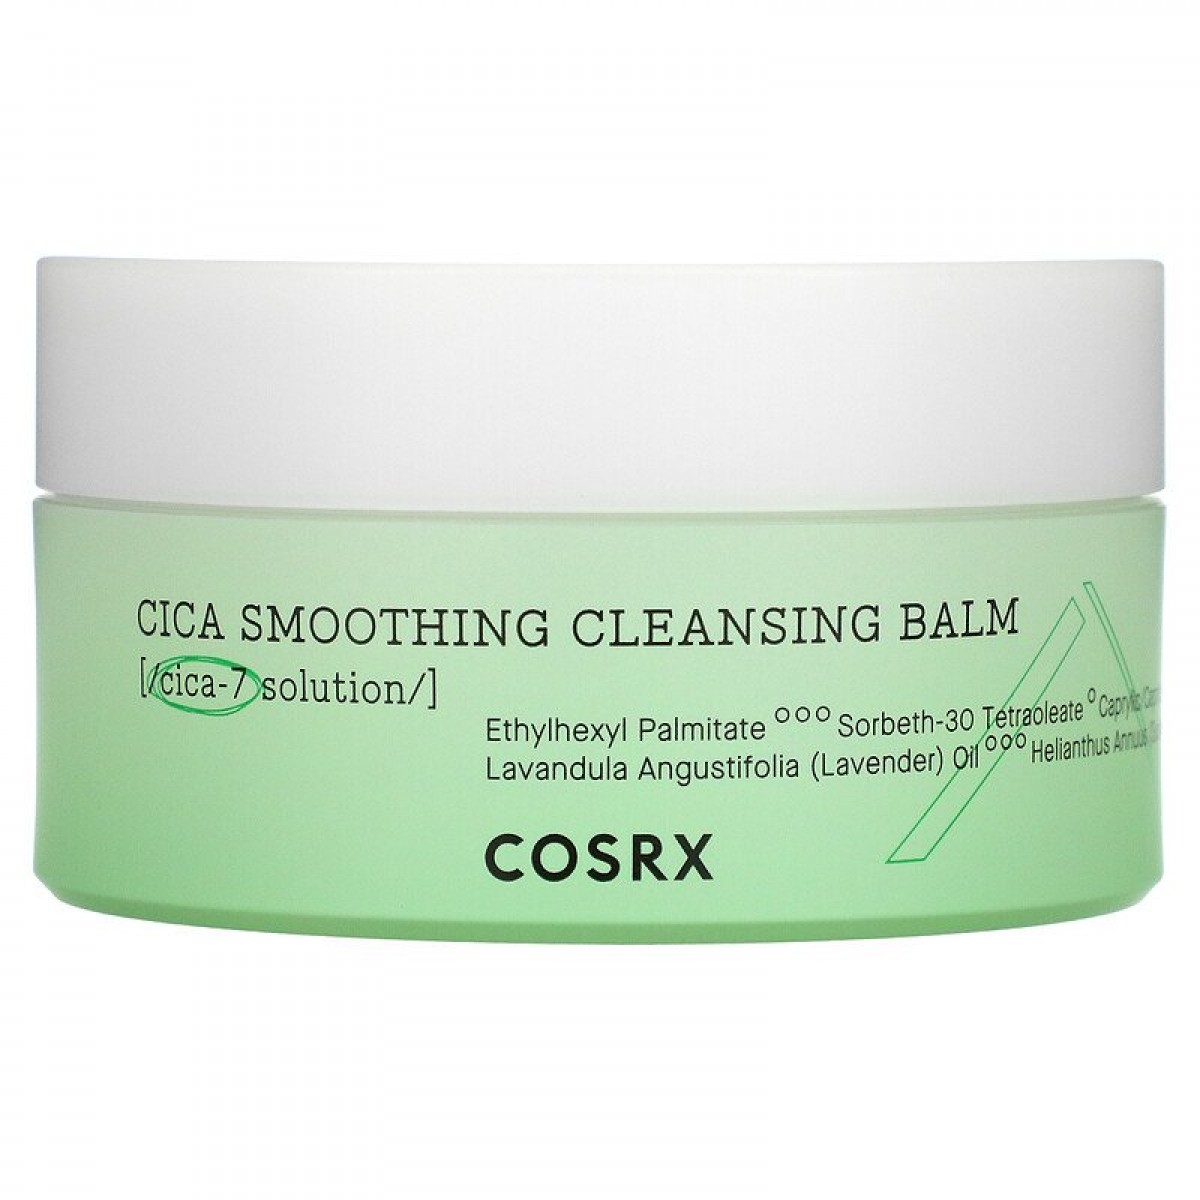 Очищающий бальзам с центеллой Cosrx Cica Smoothing Cleansing Balm